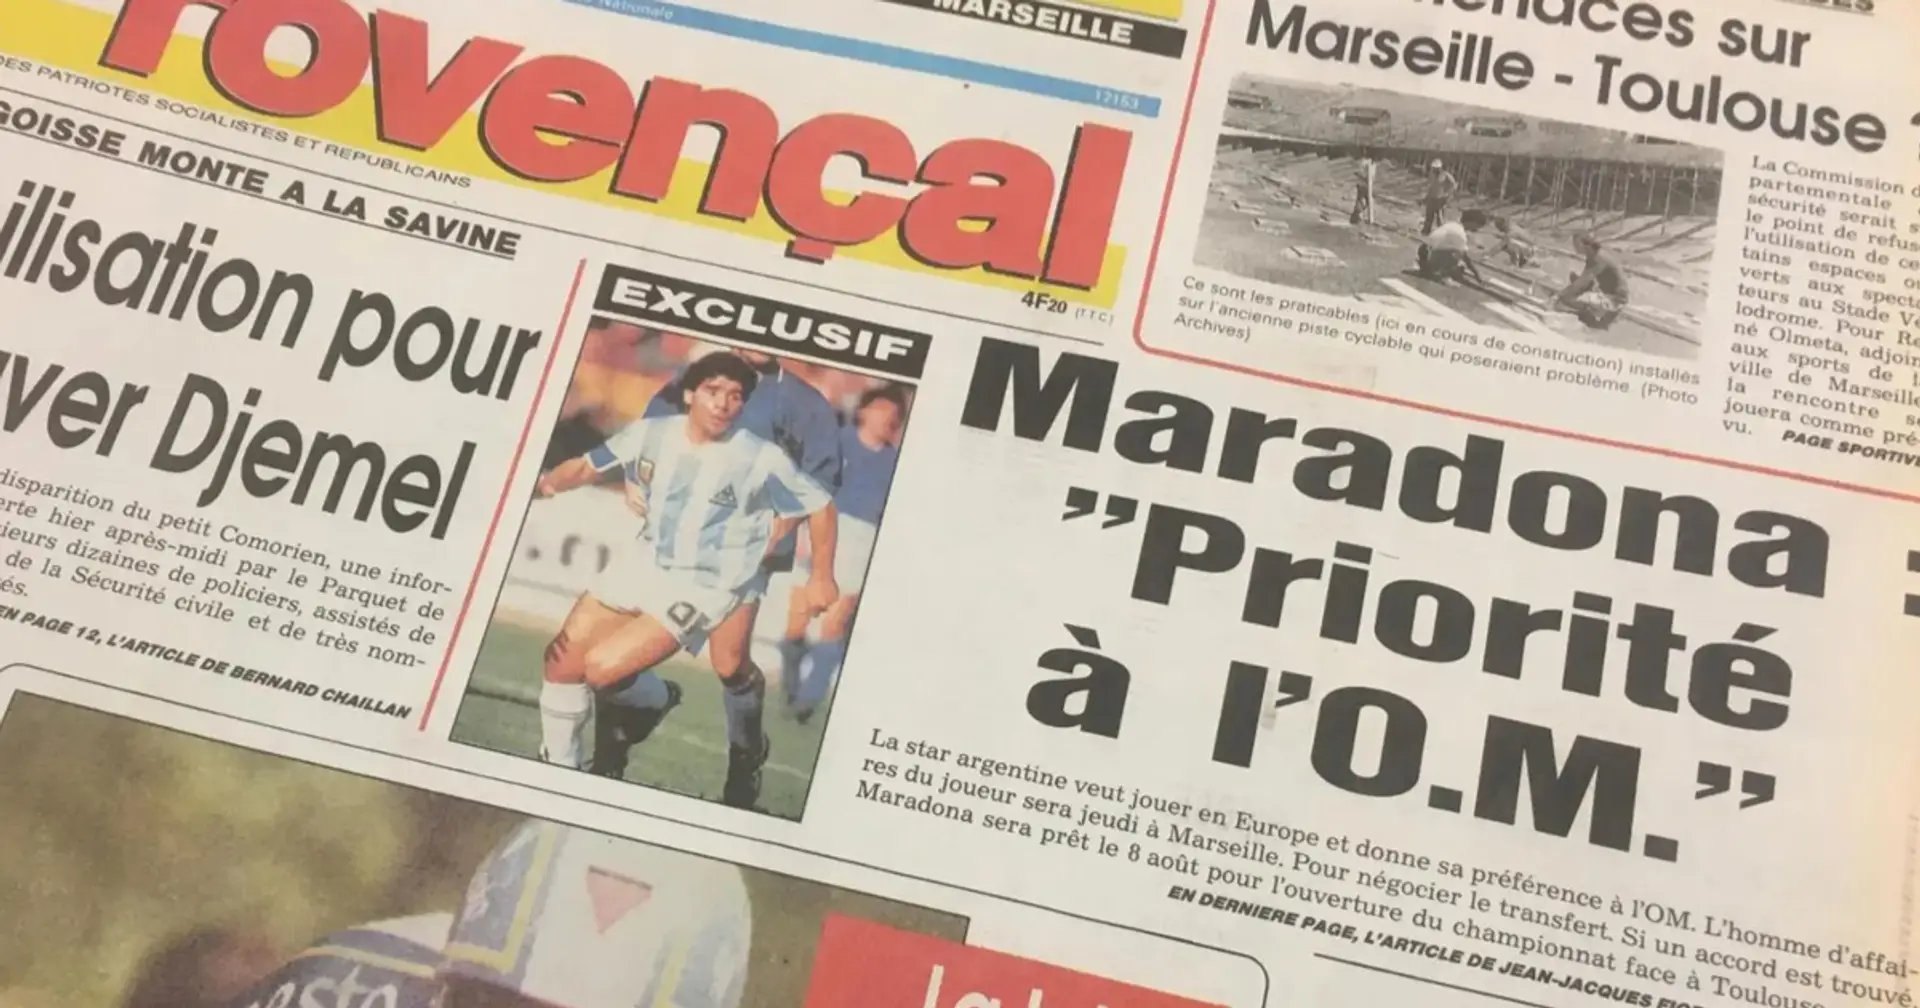 Le jour où la presse a annoncé le transfert imminent de Diego Maradona à l'OM